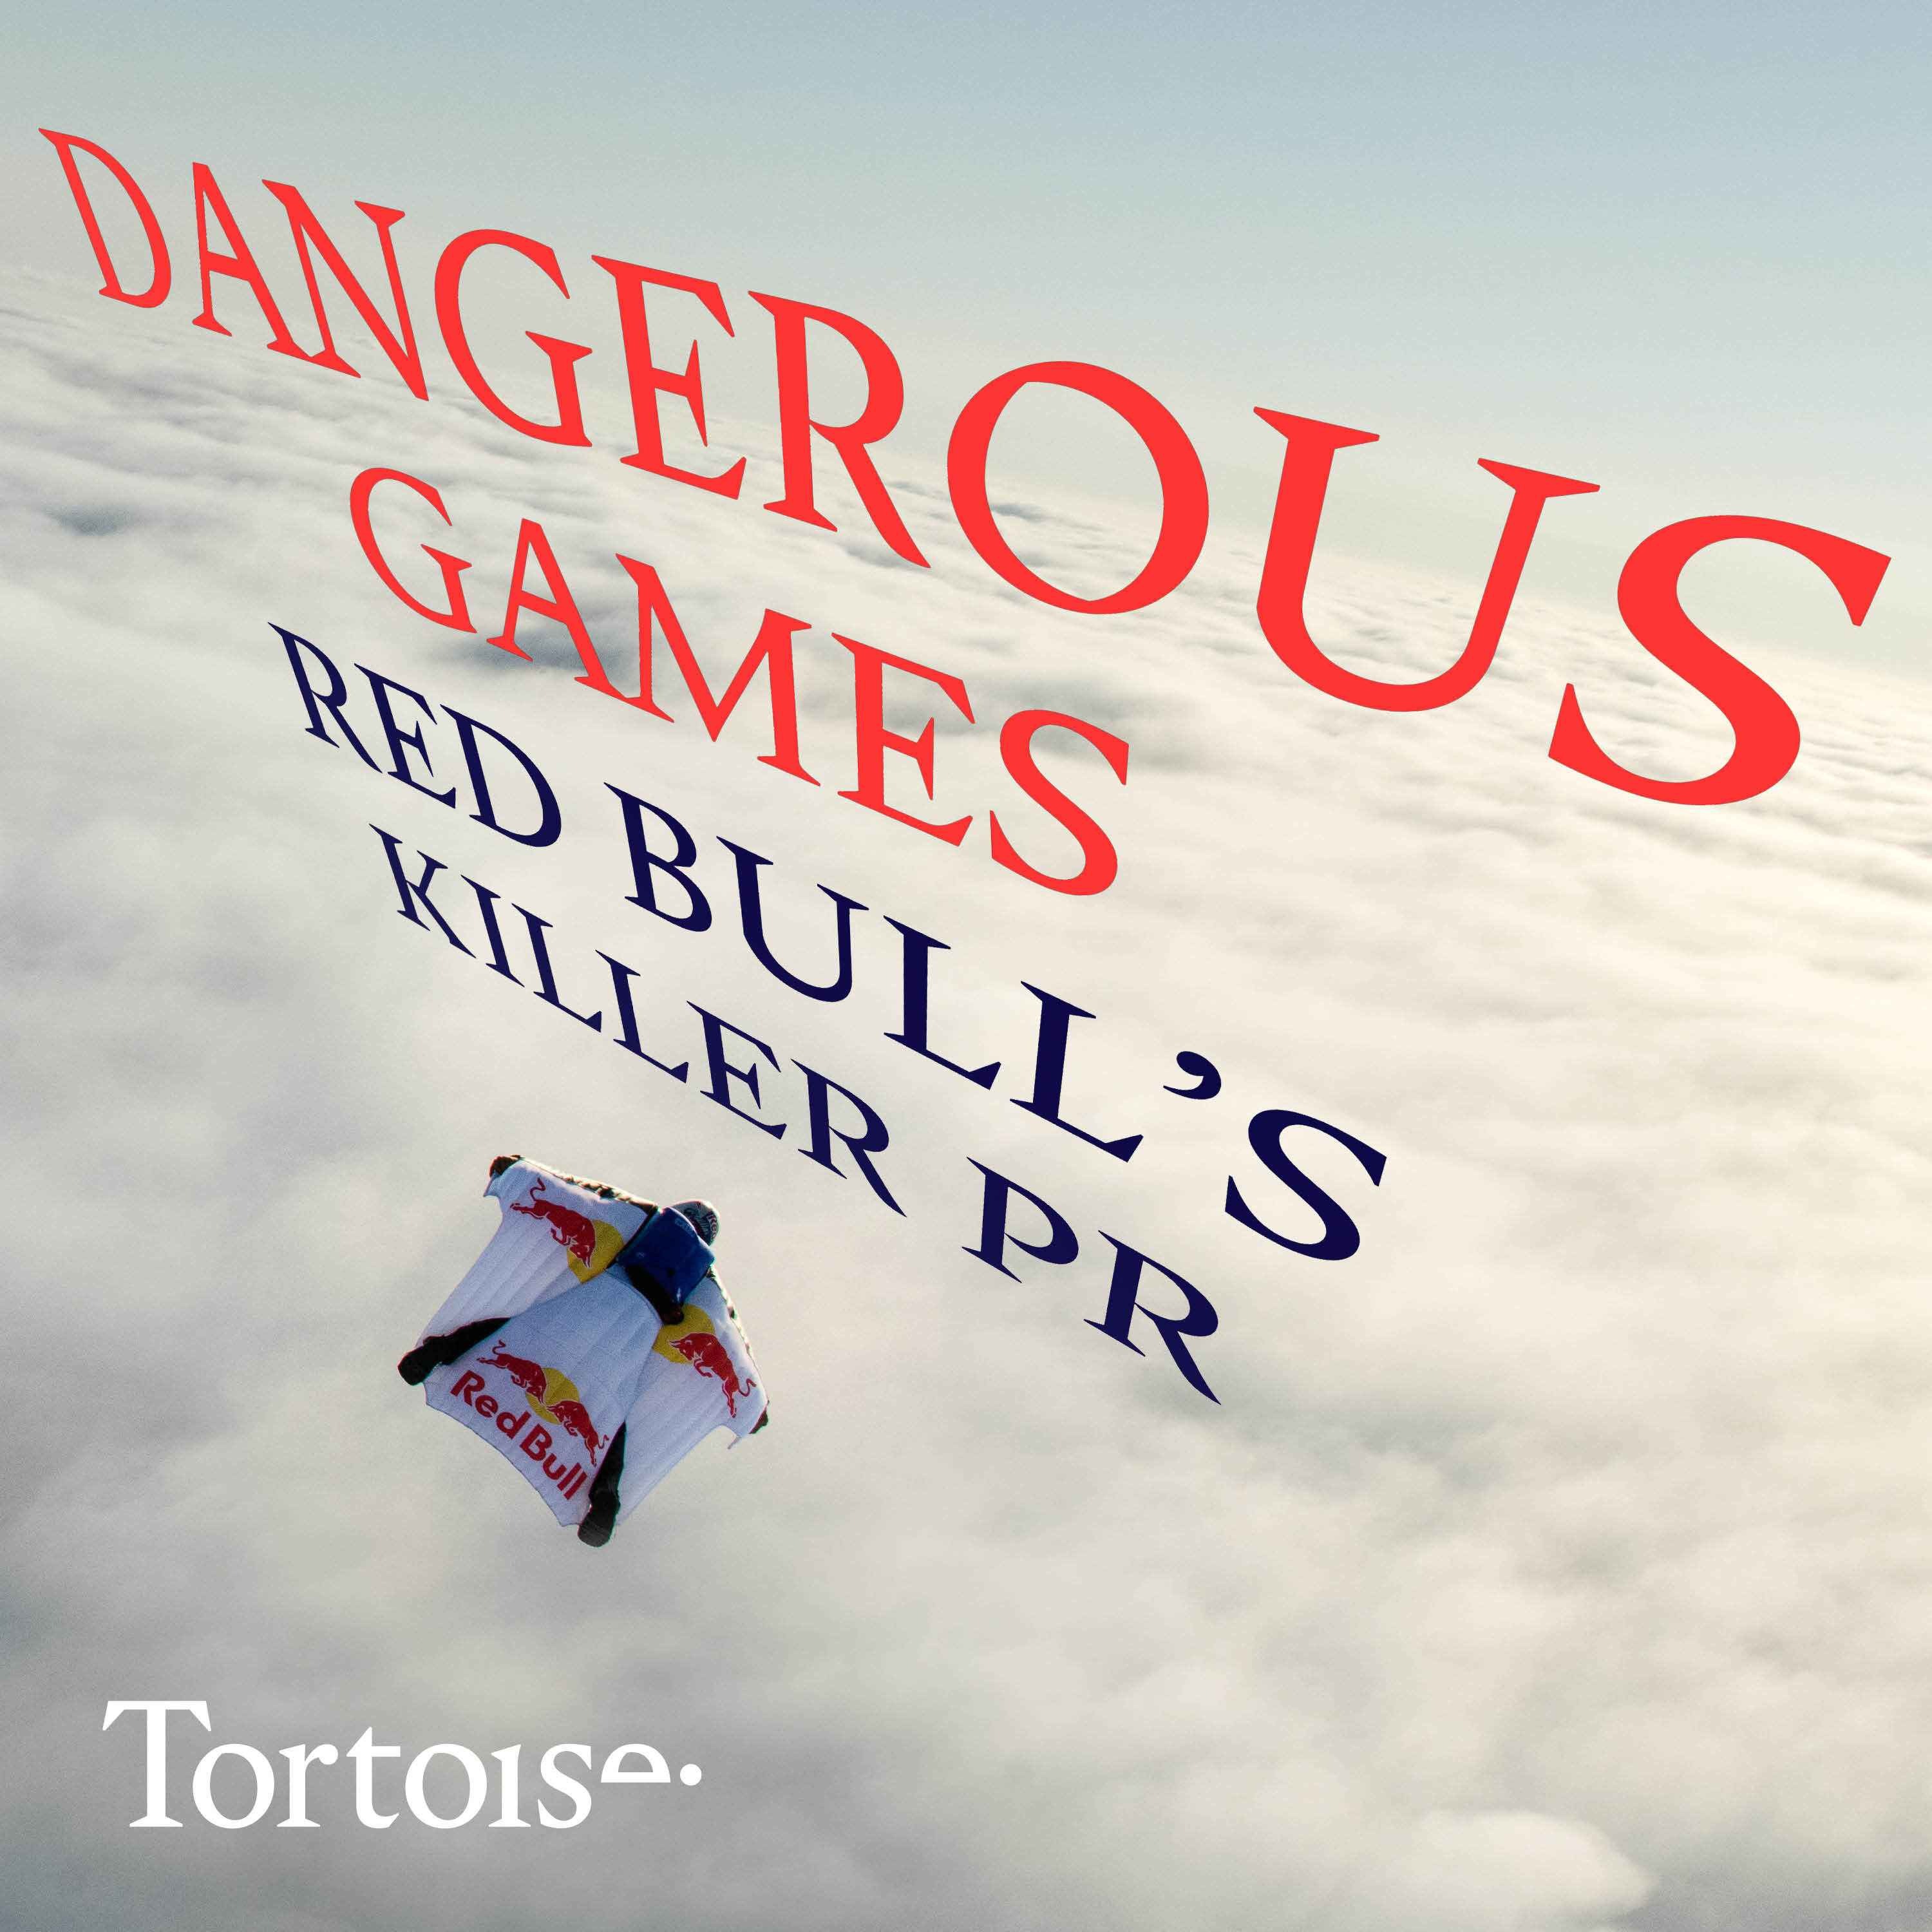 Dangerous games: Red Bull's killer PR